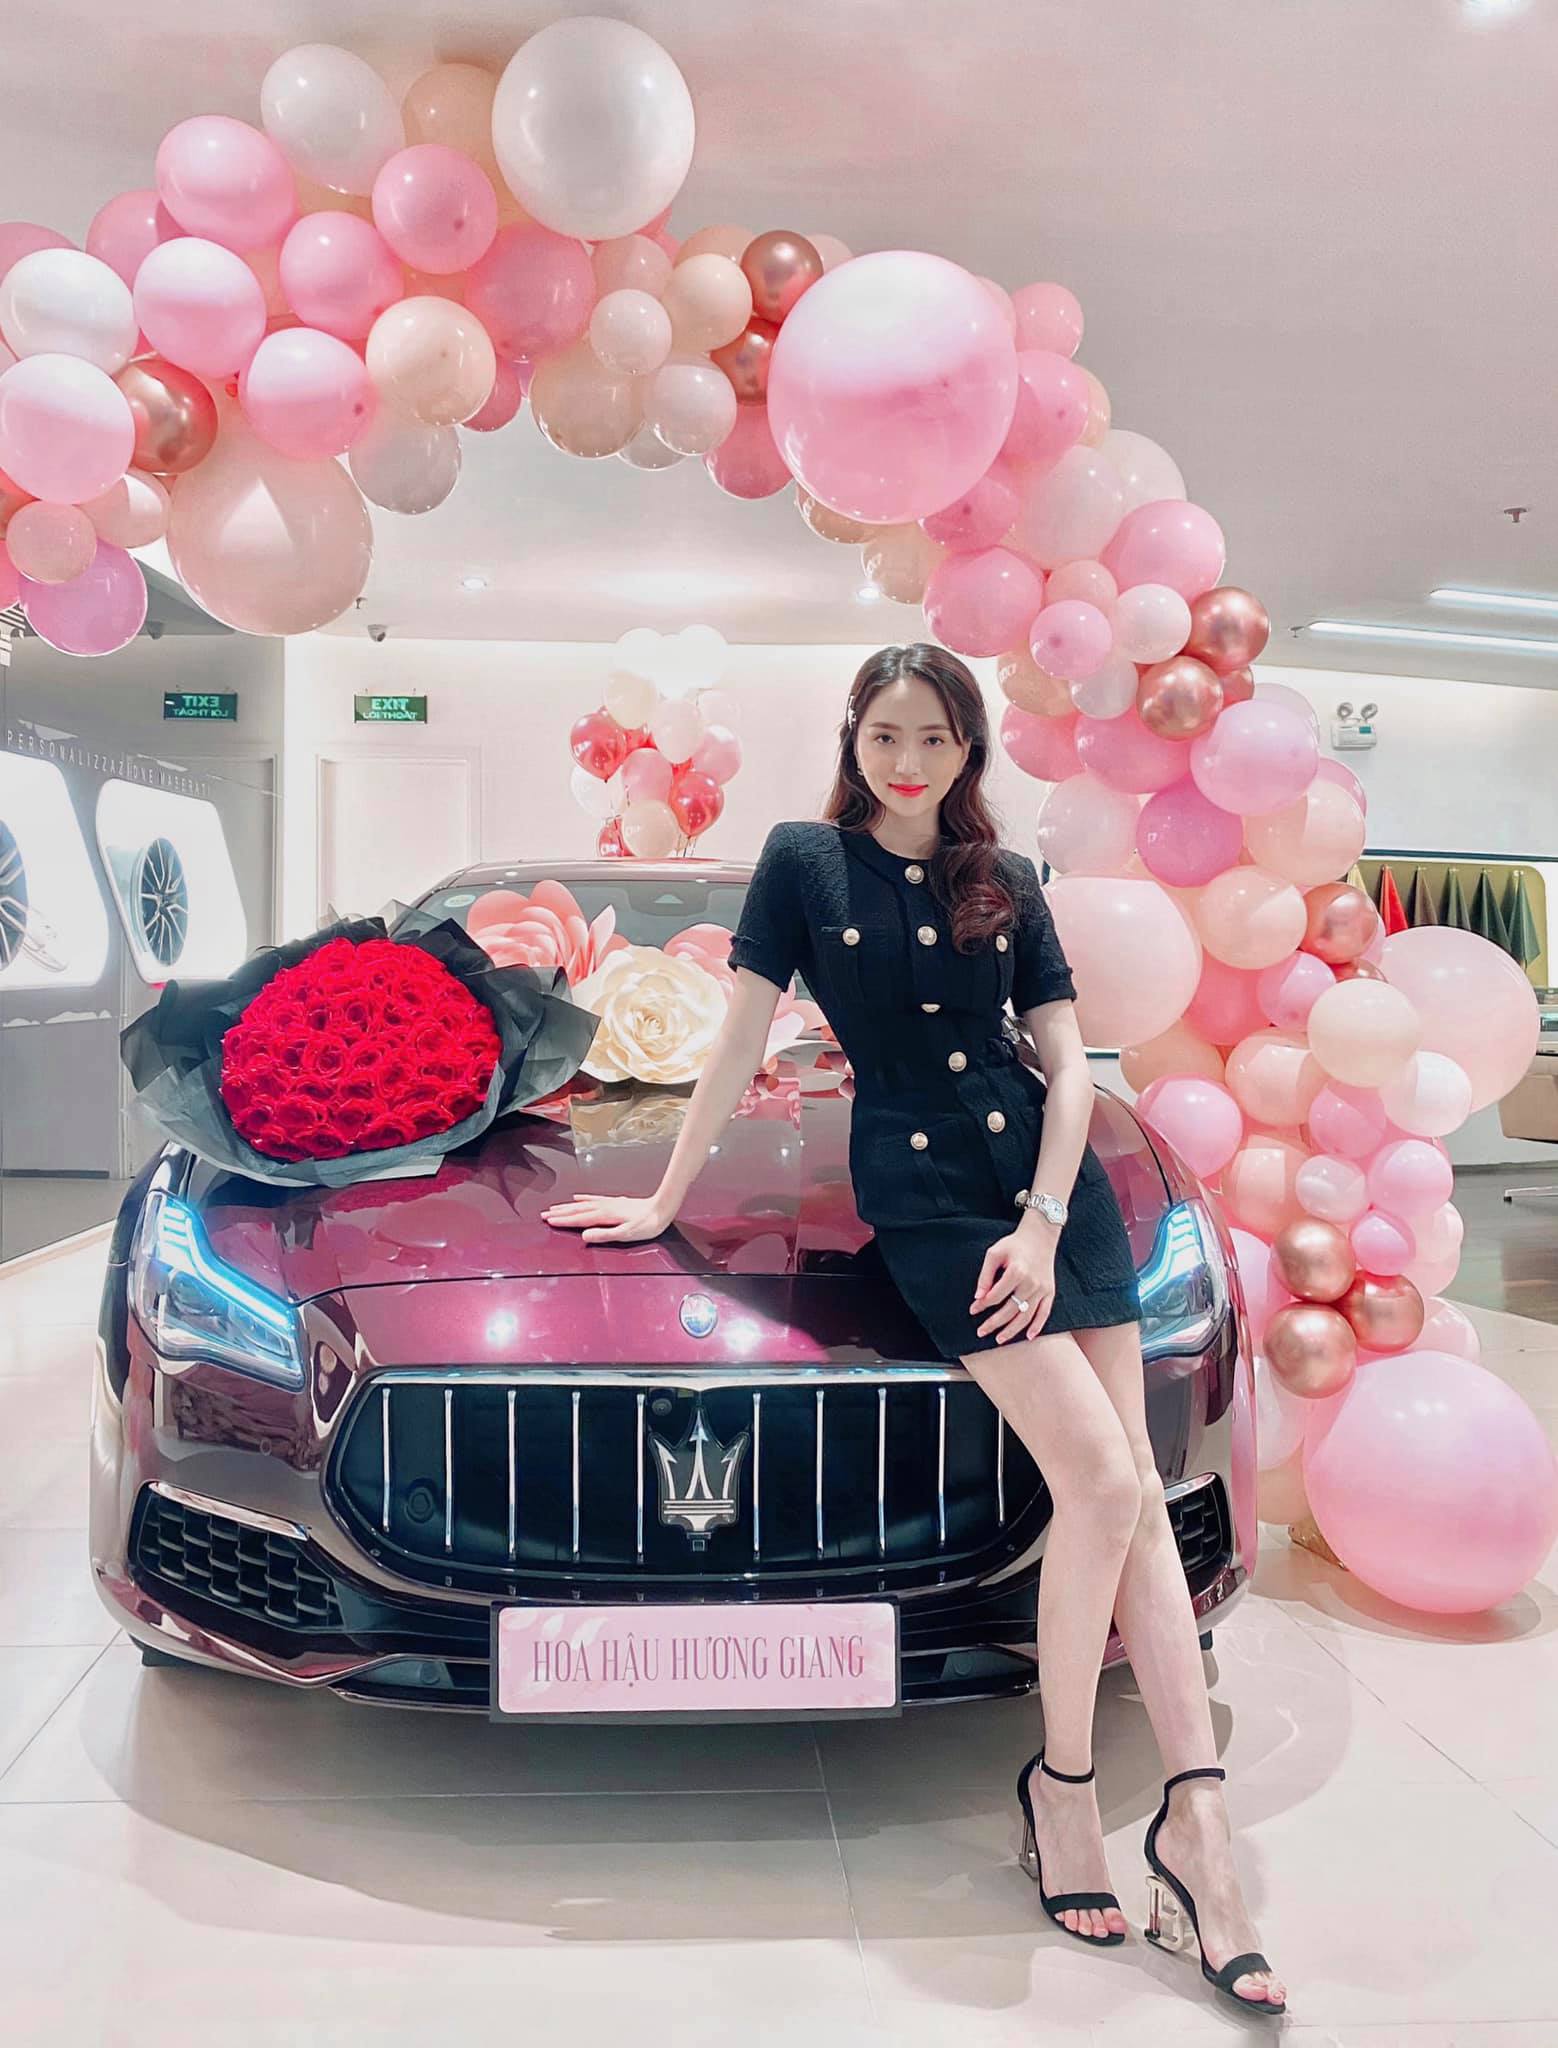 Hoa hậu Hương Giang trong buổi nhận xe mới 8 tỷ đồng.